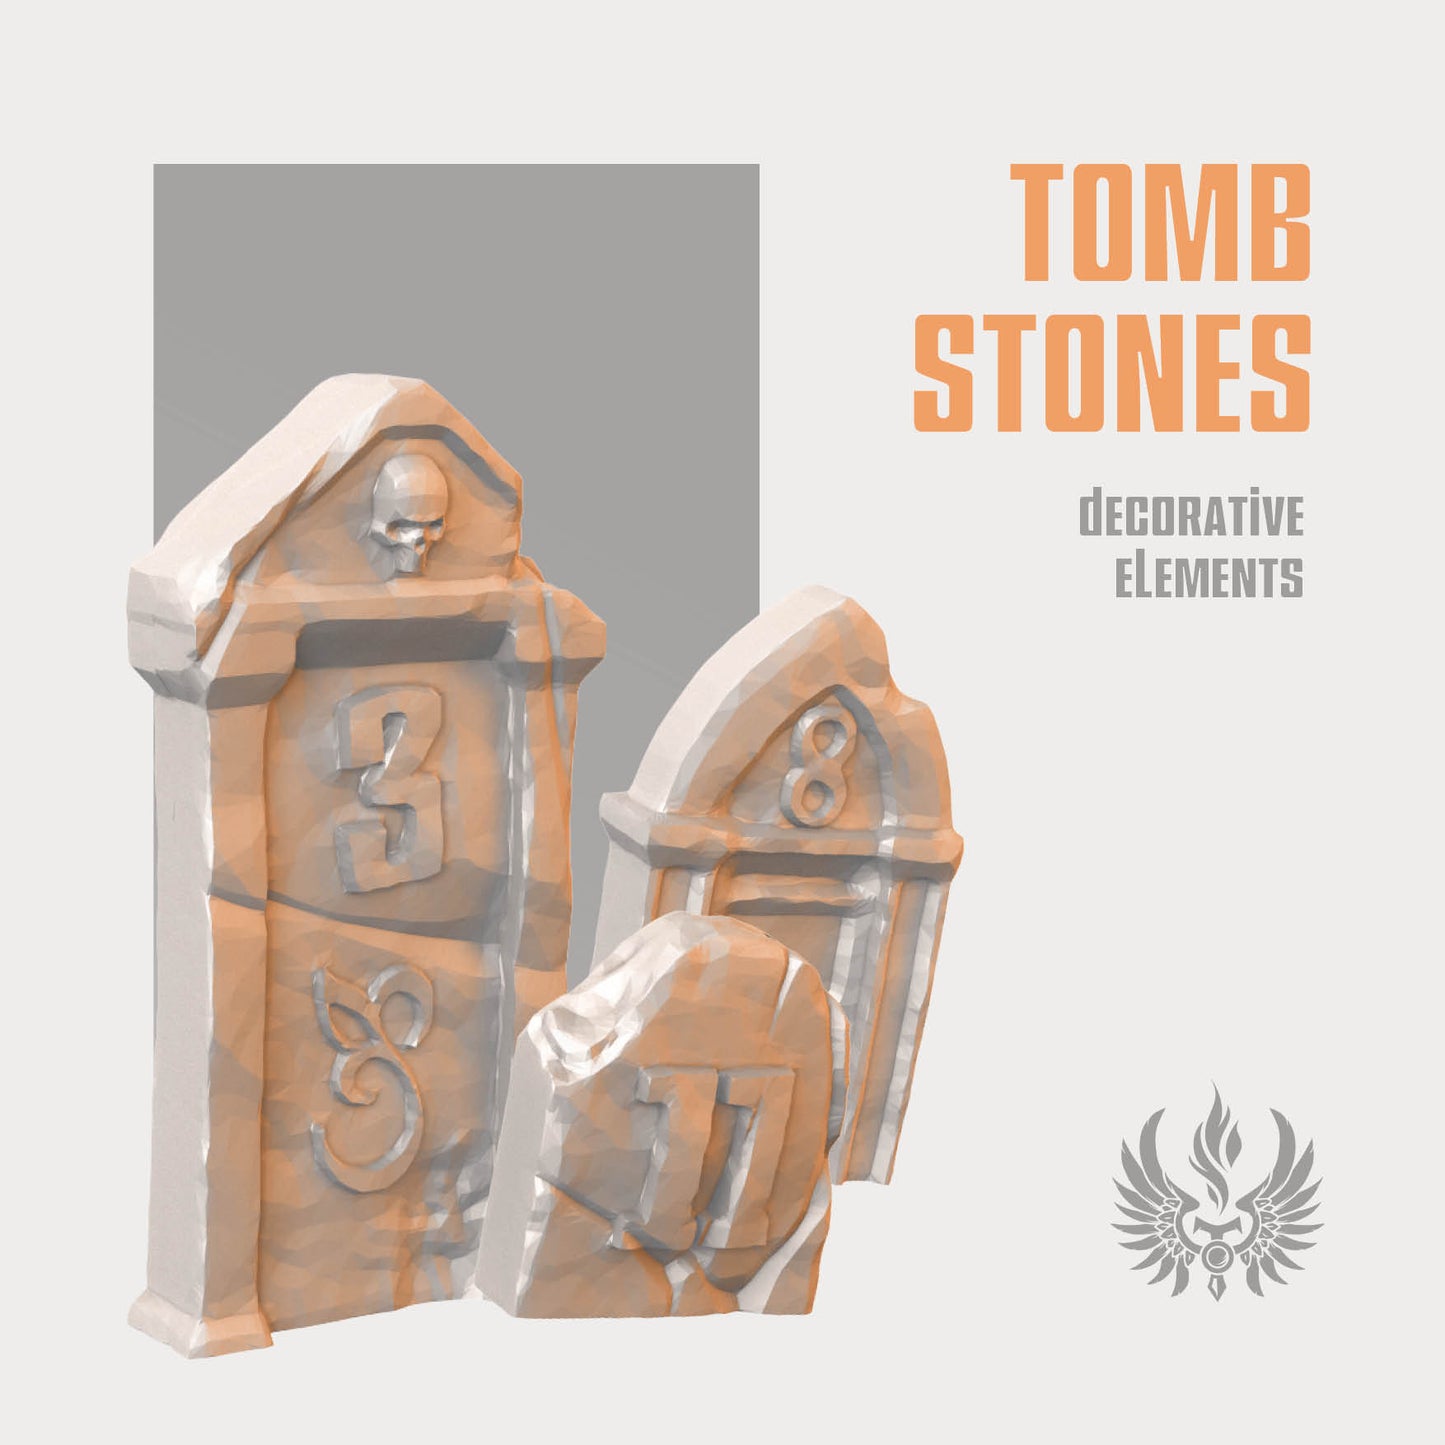 Tombstones